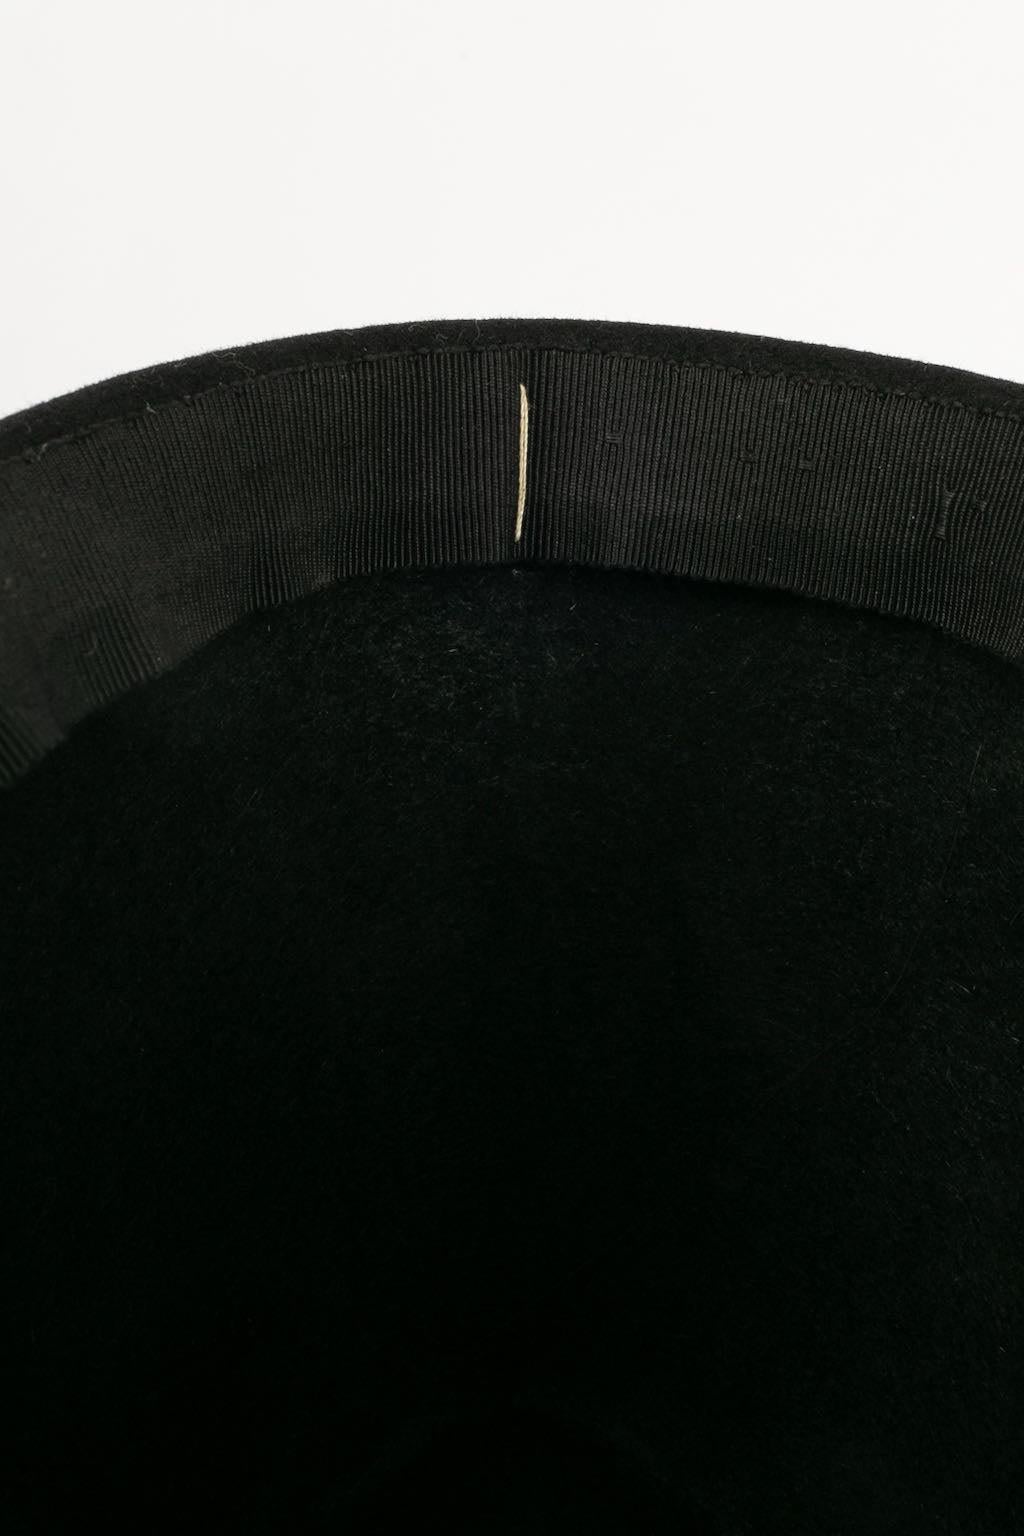 Yves Saint Laurent Fez Hat in Black Felt 4